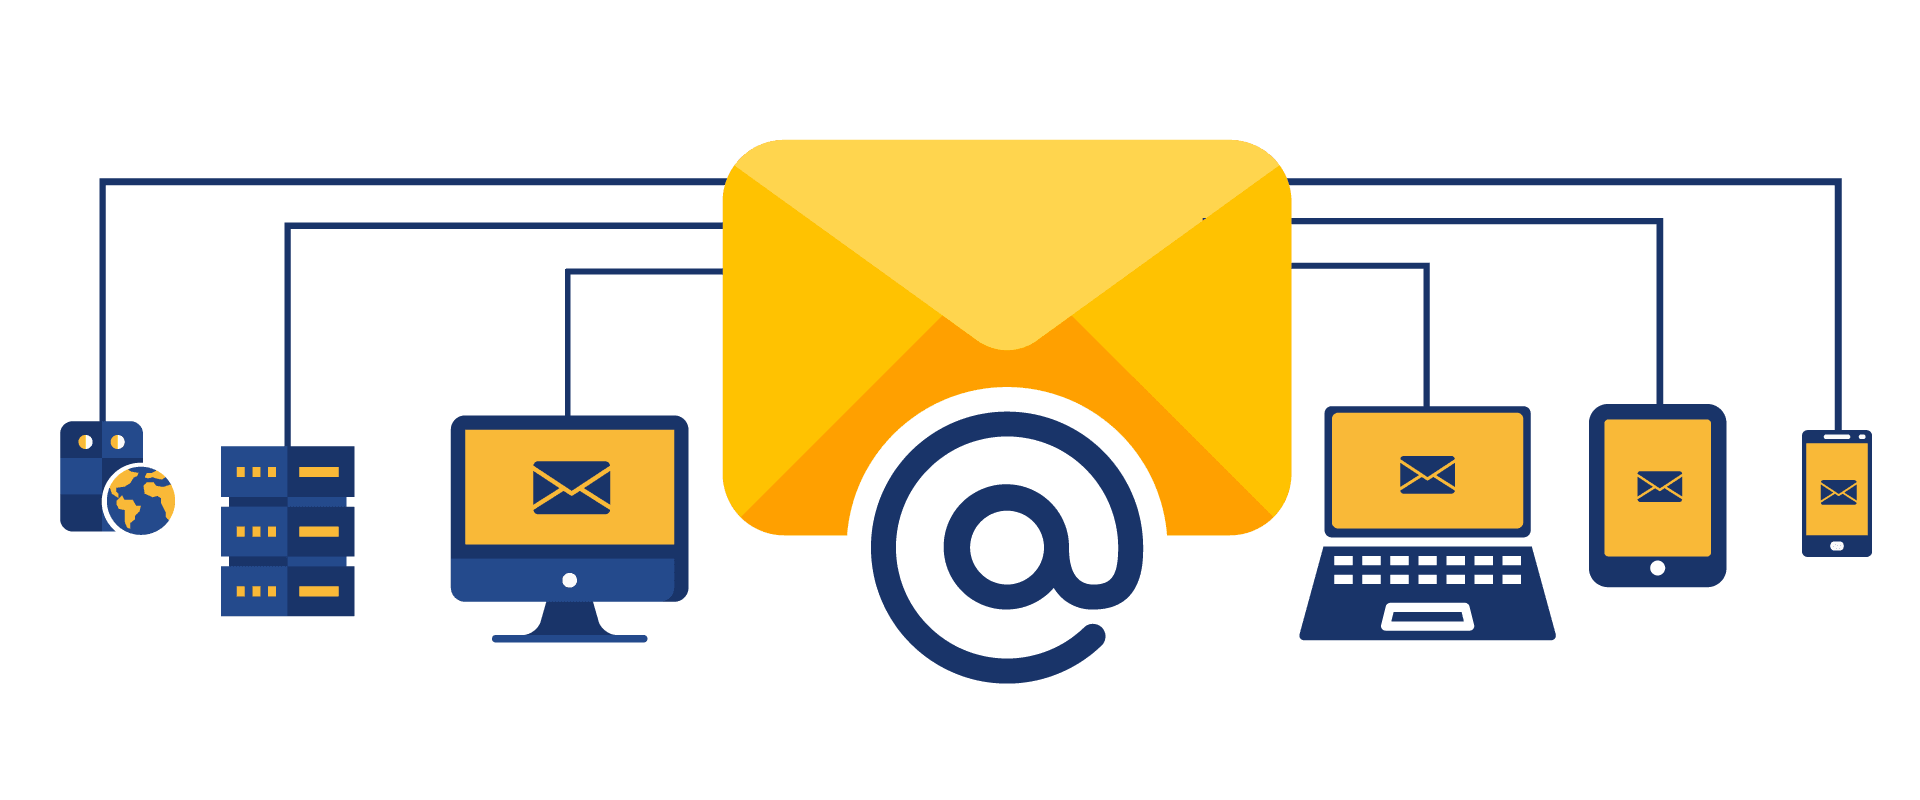 emails hosting dubai